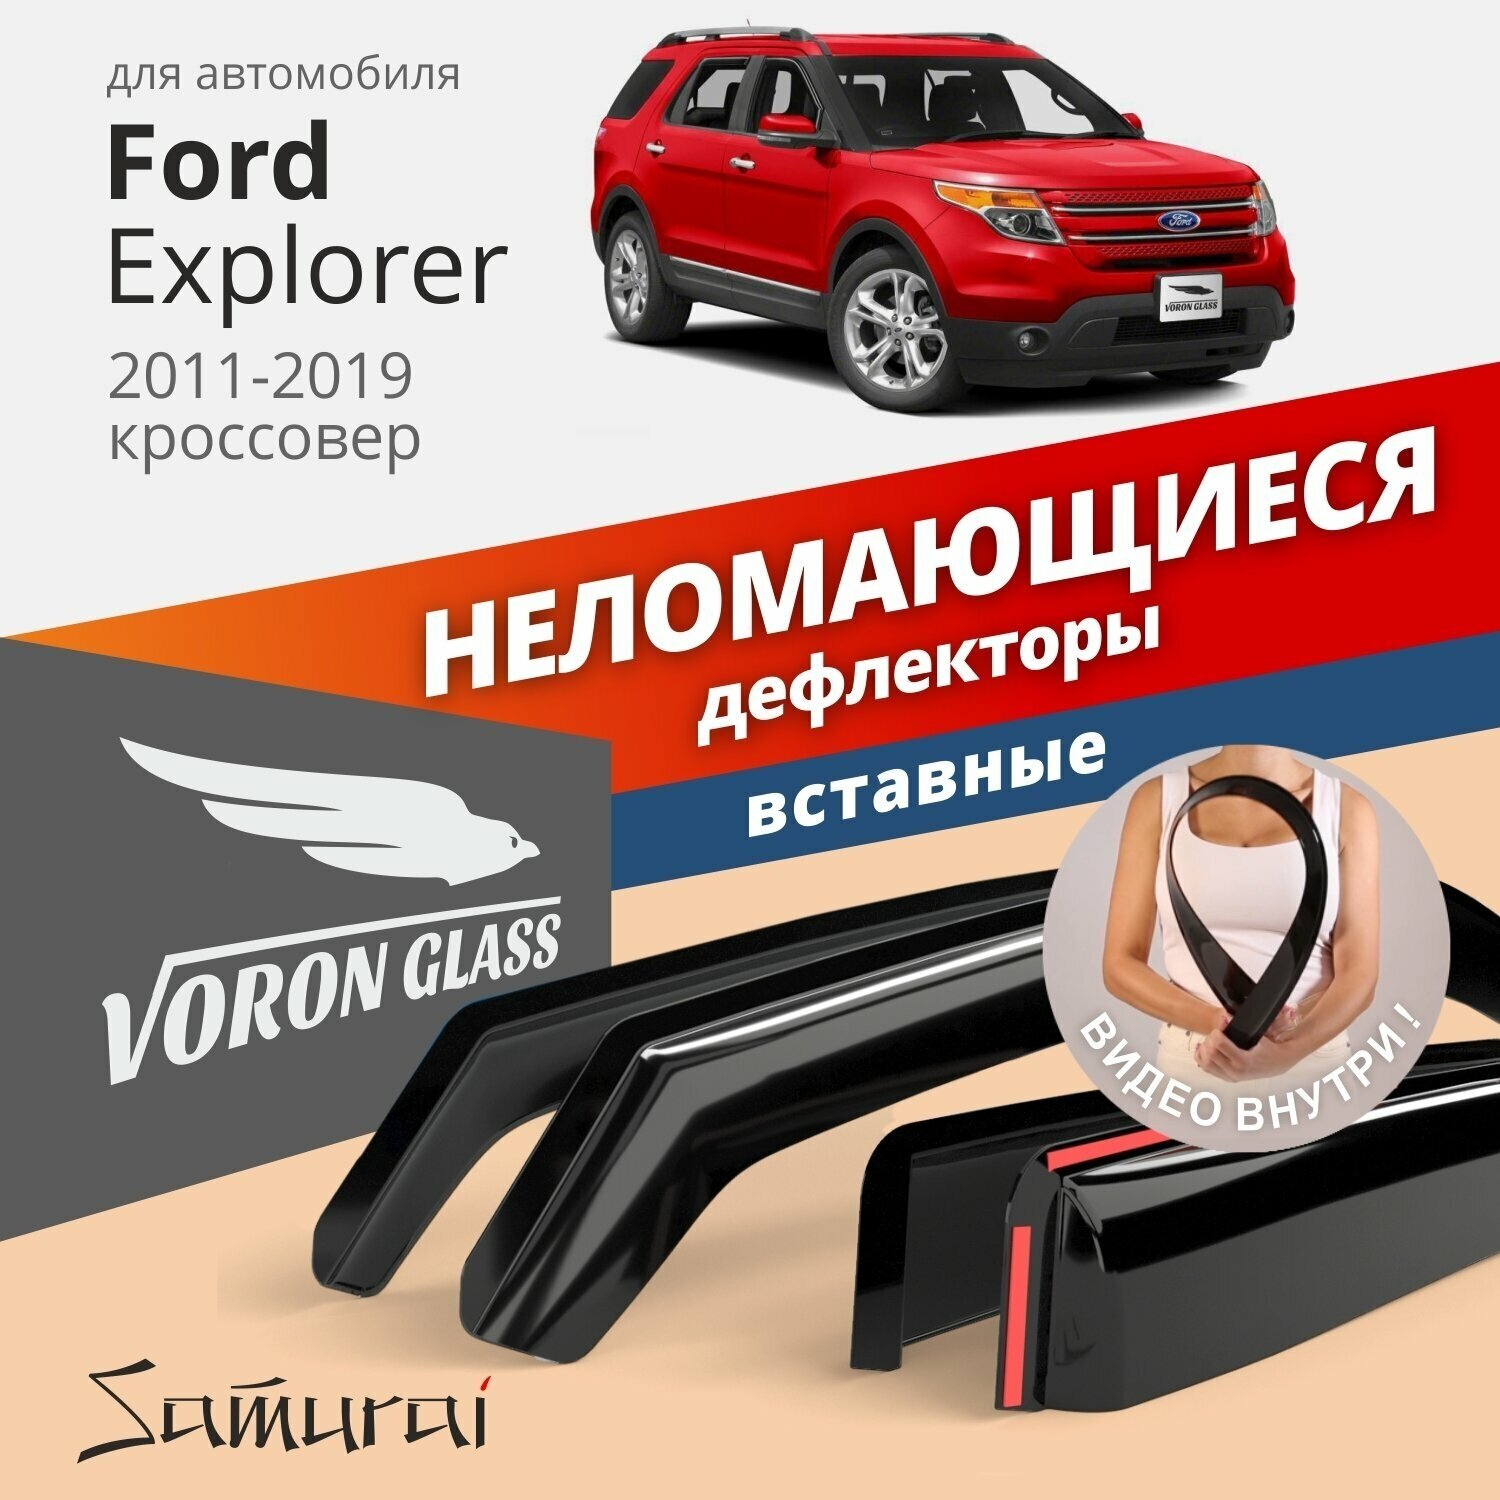 Дефлекторы окон неломающиеся Voron Glass серия Samurai для Ford Explorer V 2011-2019 вставные 4 шт.